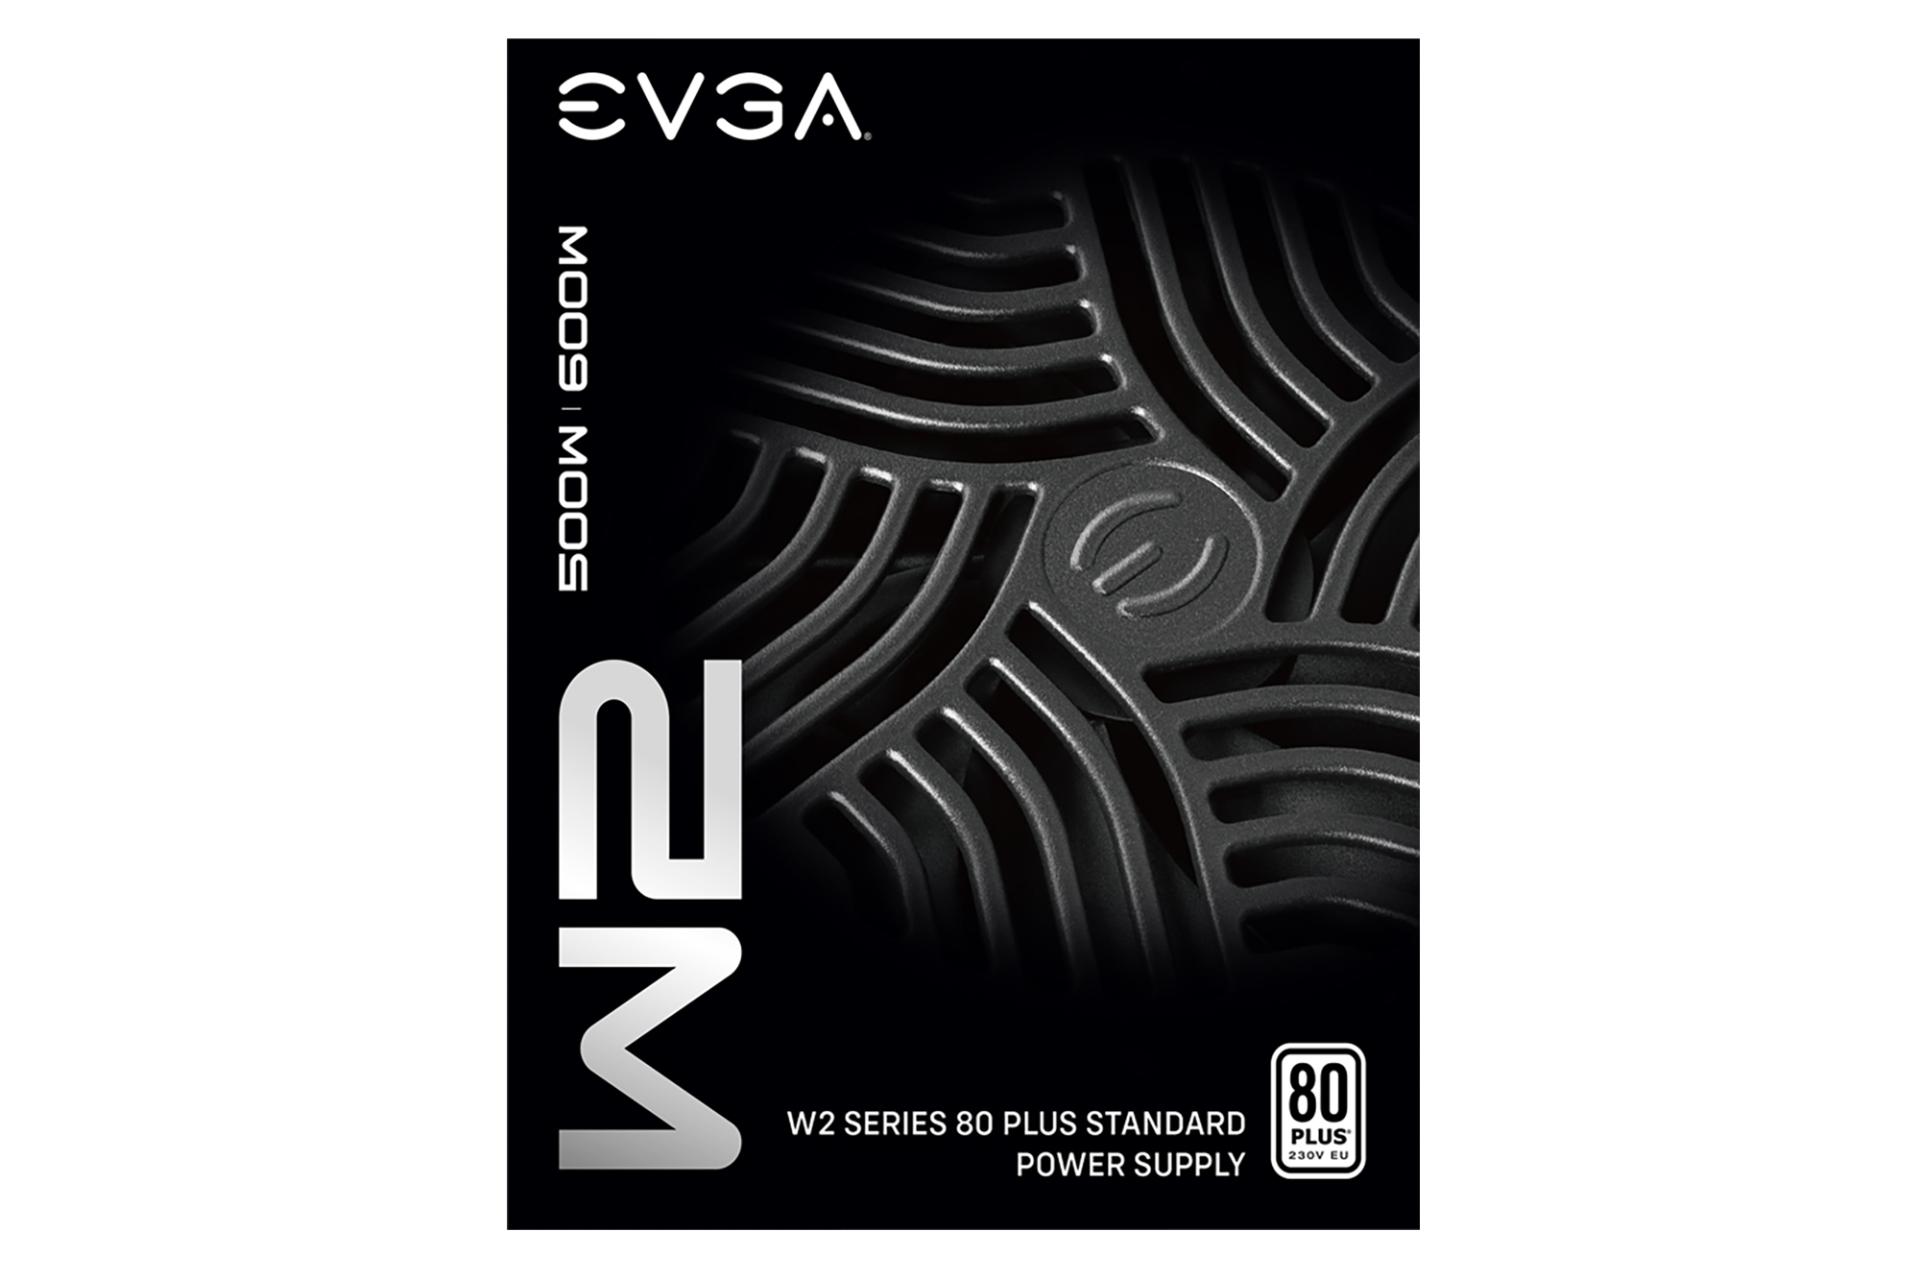 ابعاد پاور کامپیوتر ای وی جی ای EVGA 500 W2 با توان 500 وات